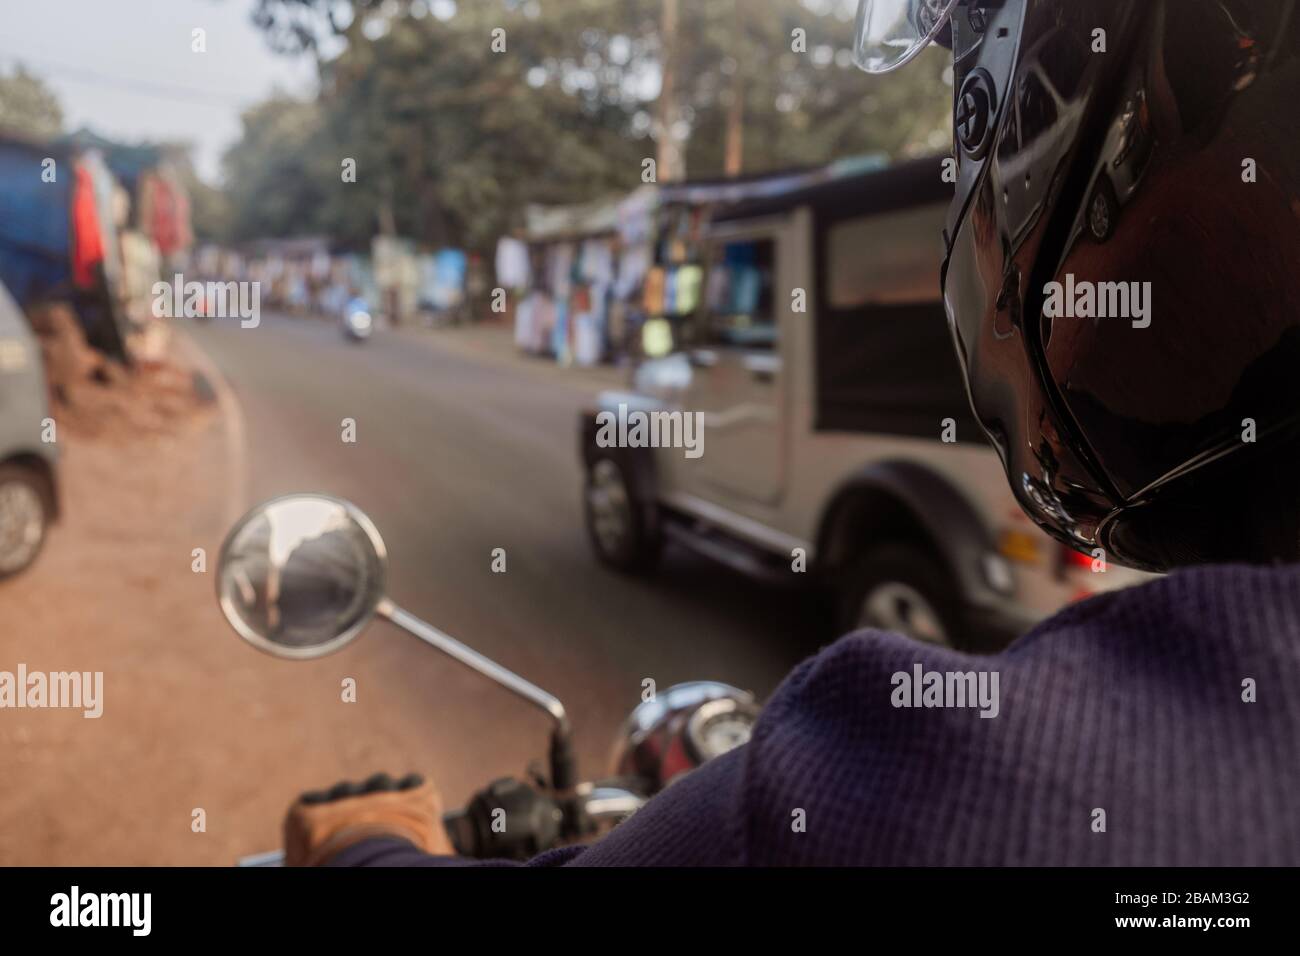 Conduire une moto donnant sur le bazar indien Banque D'Images